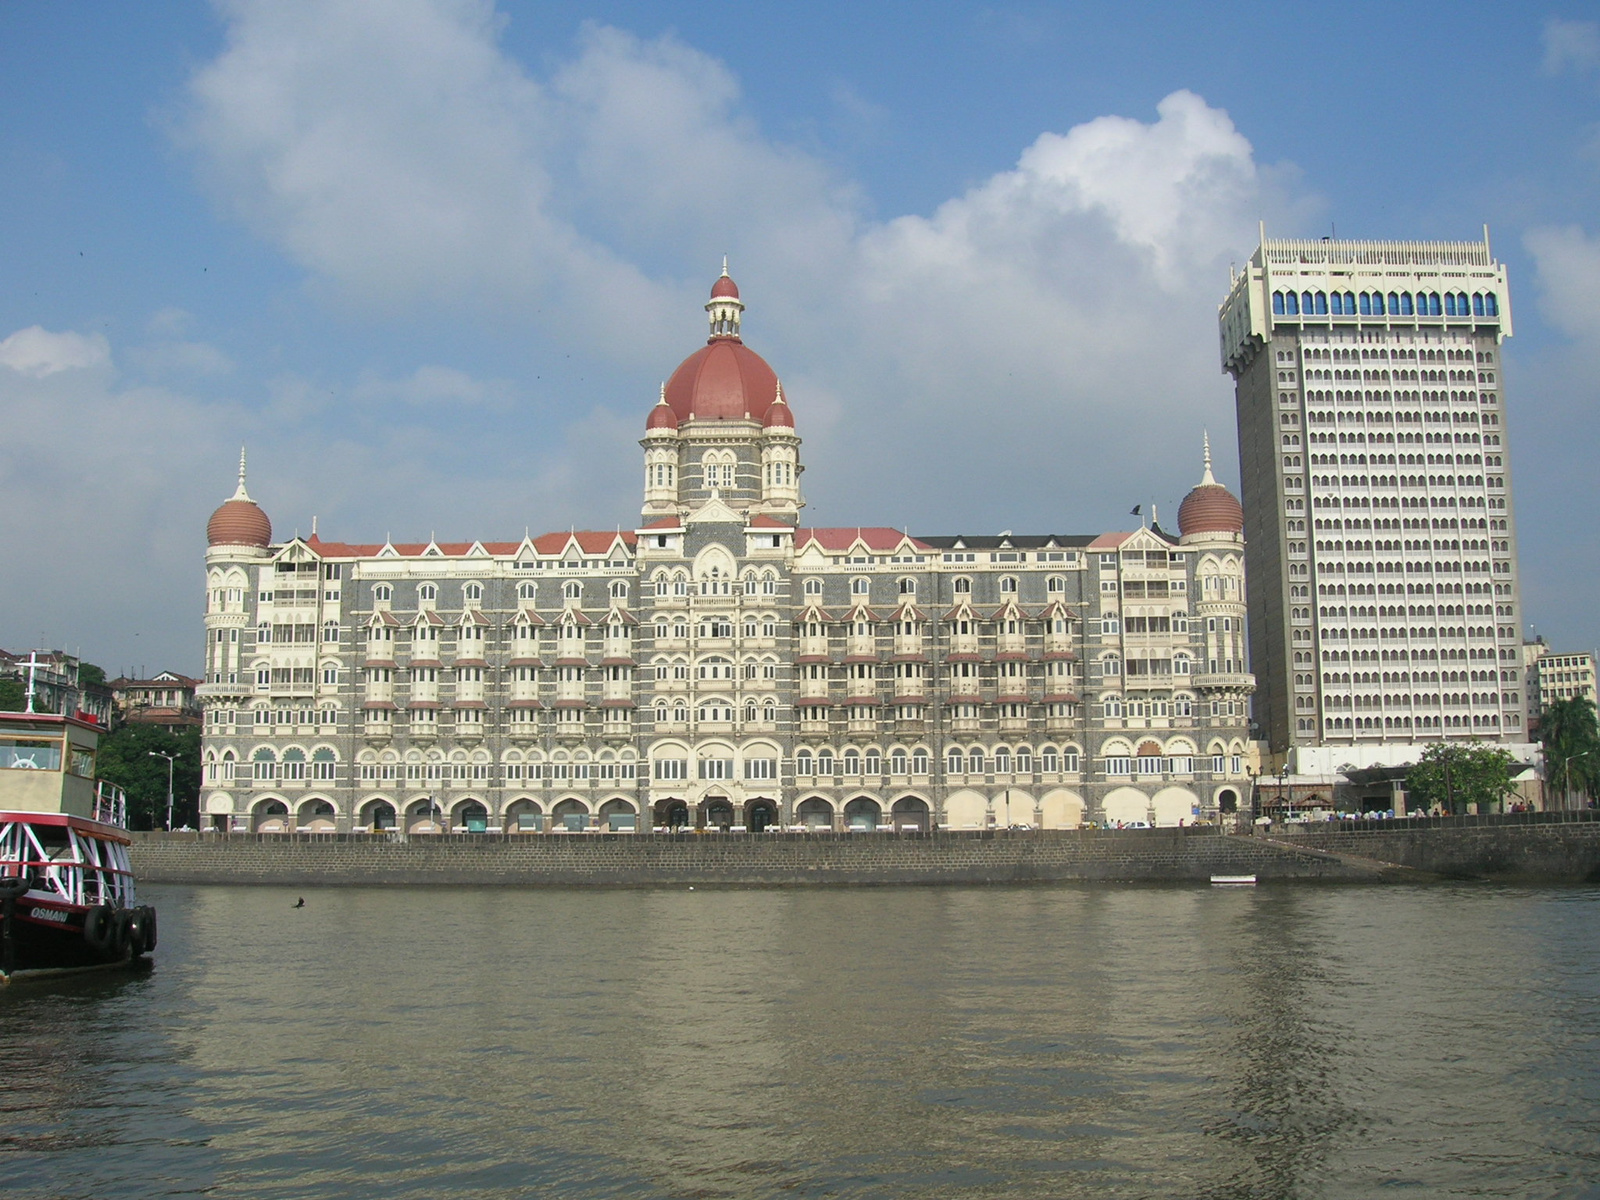 Hotel Taj Mahal from the ship